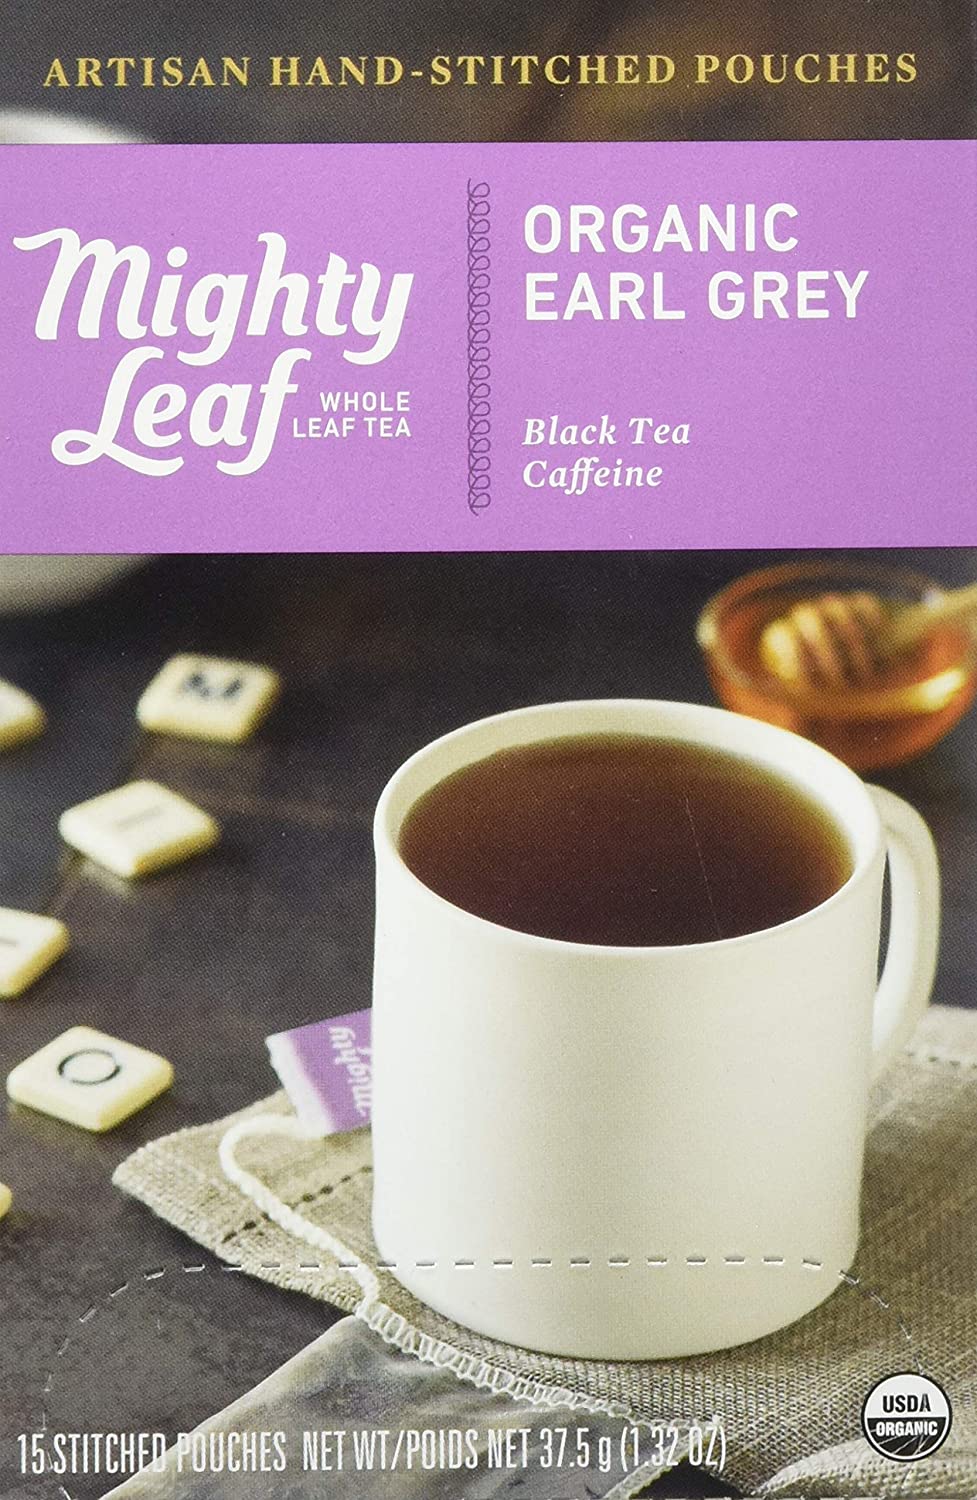 Earl Grey Tea in Pouch